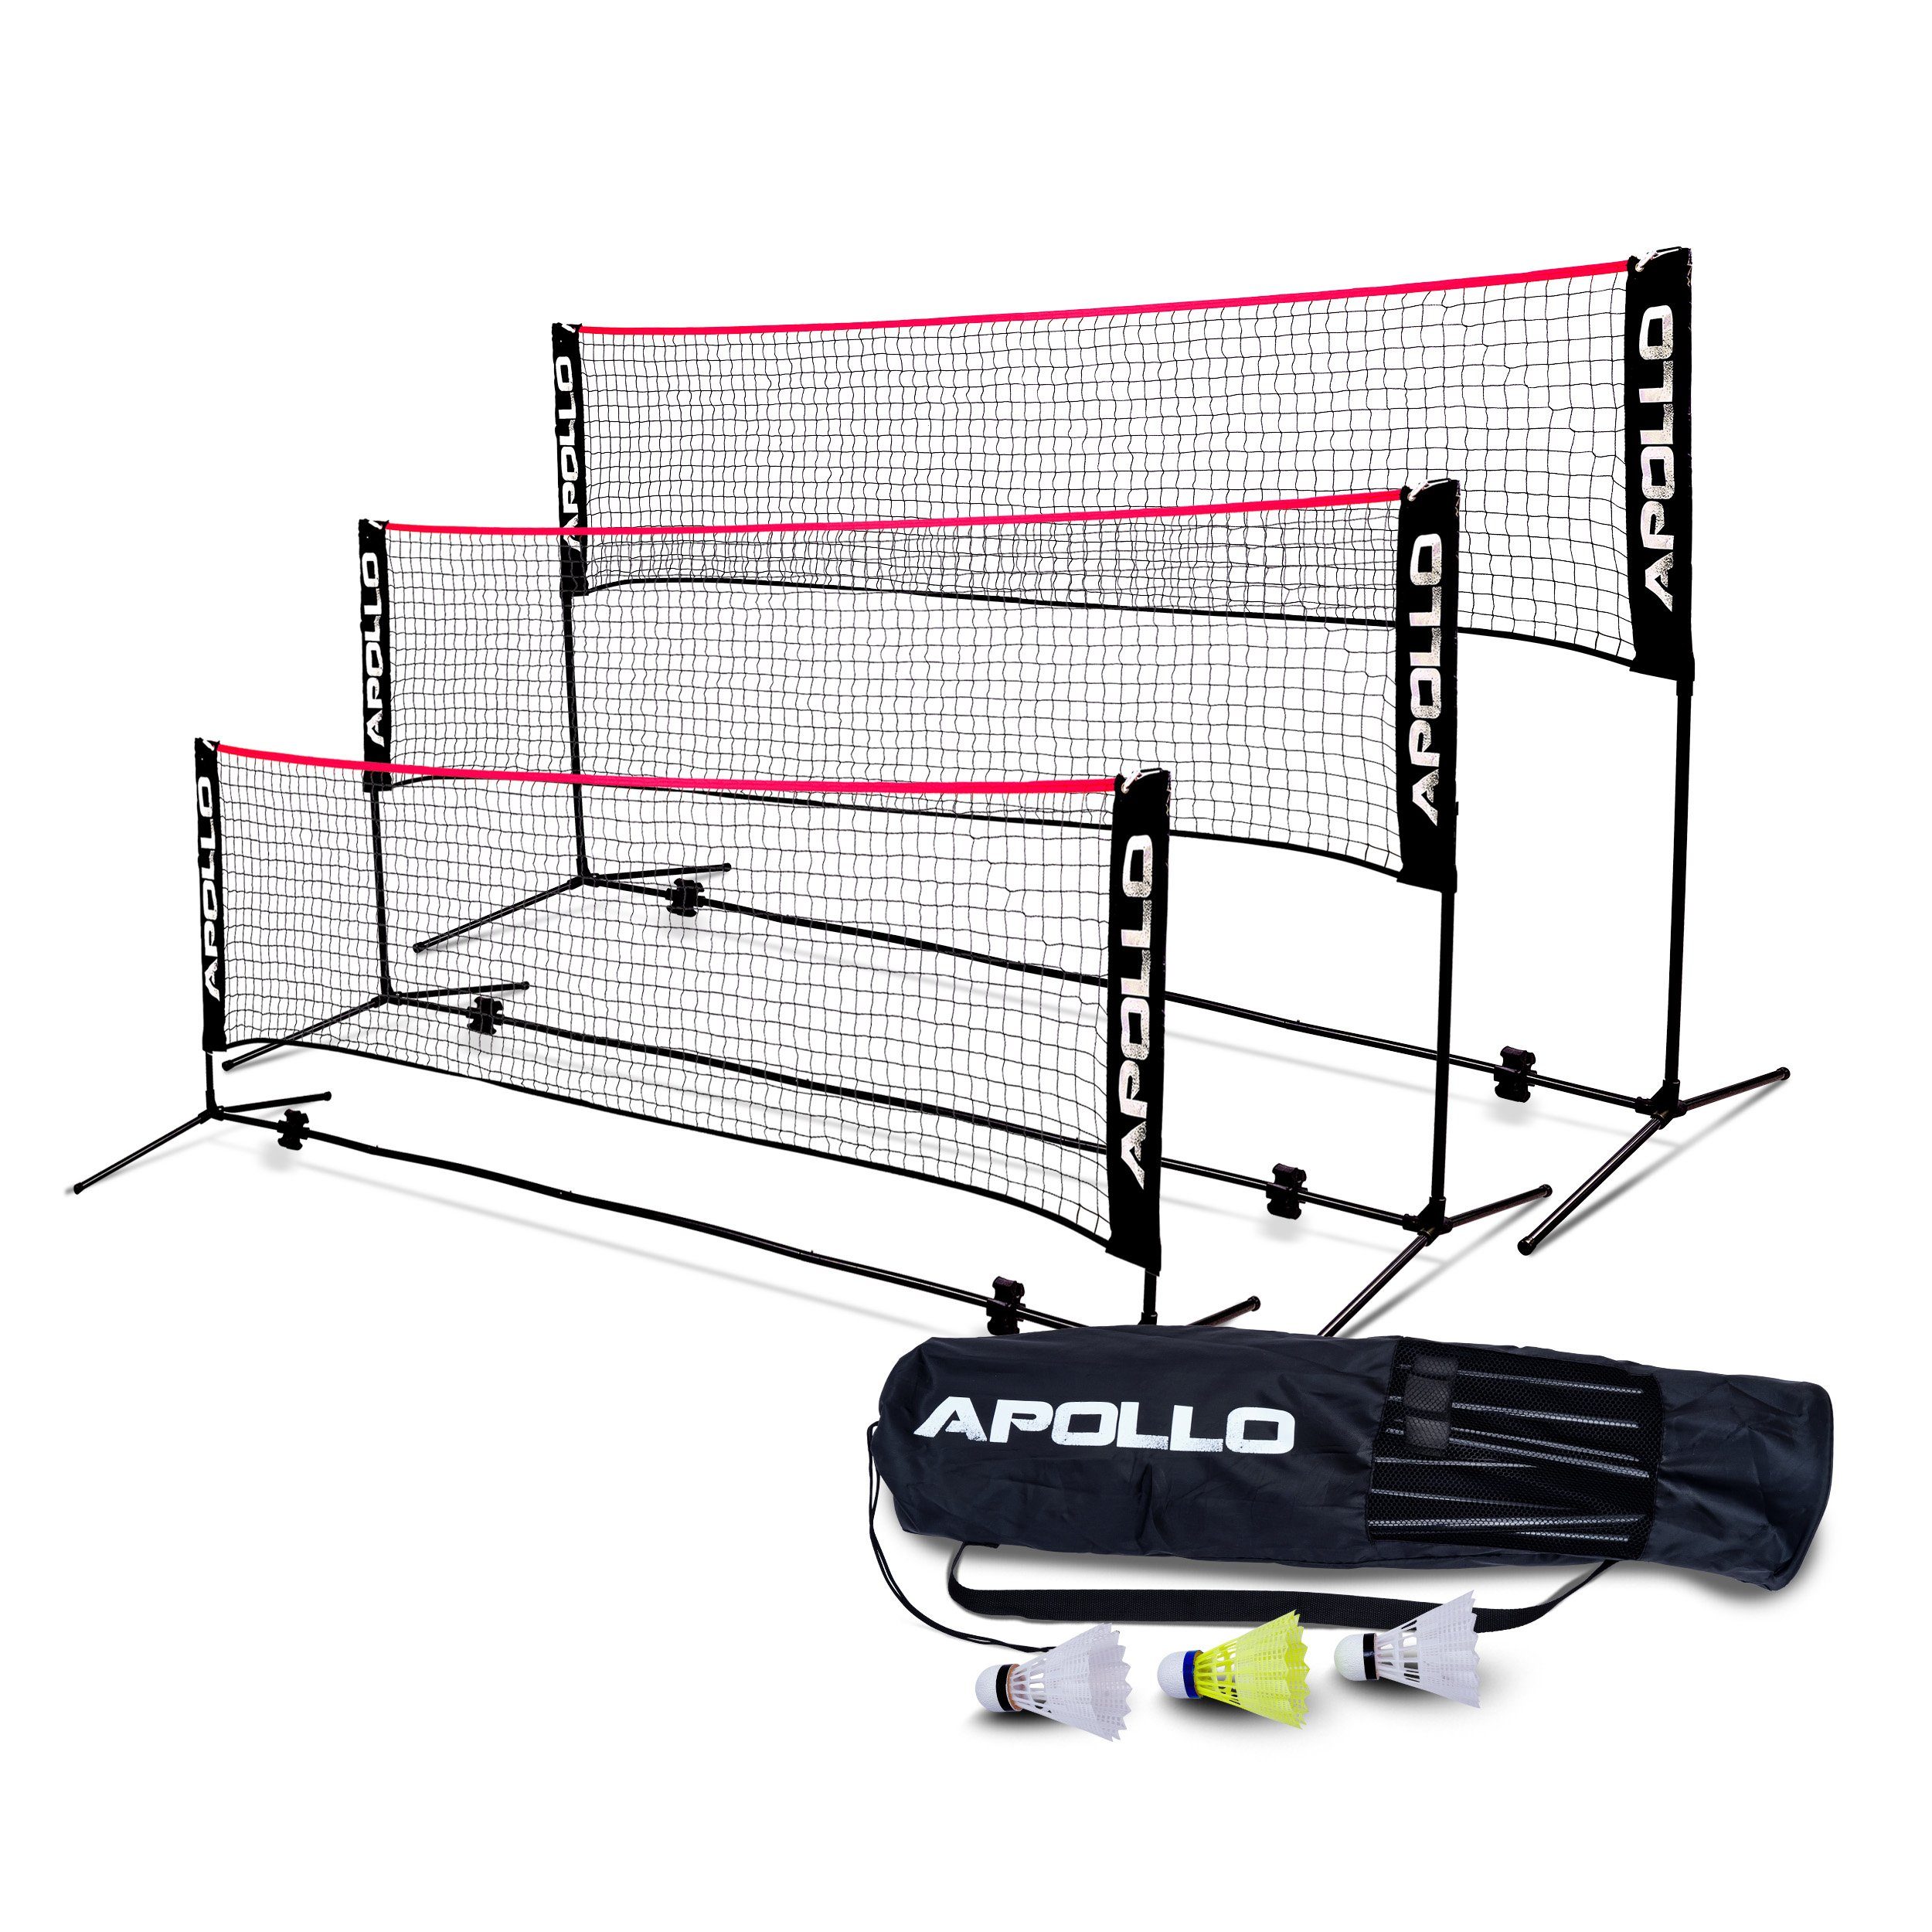 Apollo Badmintonnetz Badminton und Federbällen Schwarz/Rot 400 500 cm, cm, Volleyball cm, inkl. Netz, 300 3 höhenverstellbar